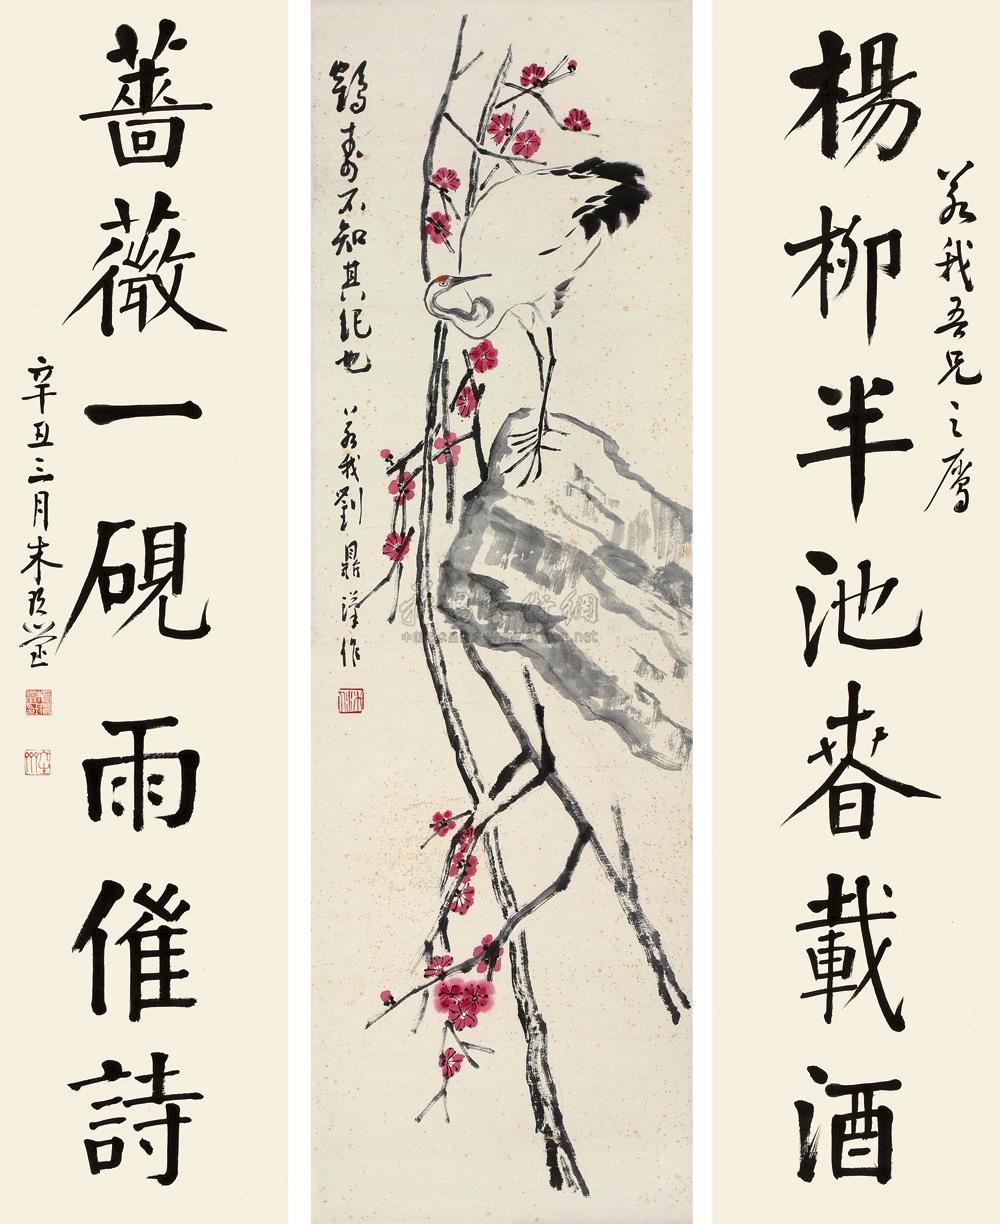 0211 辛丑(1961年)作 鹤寿图 楷书七言联 立轴,对联 纸本